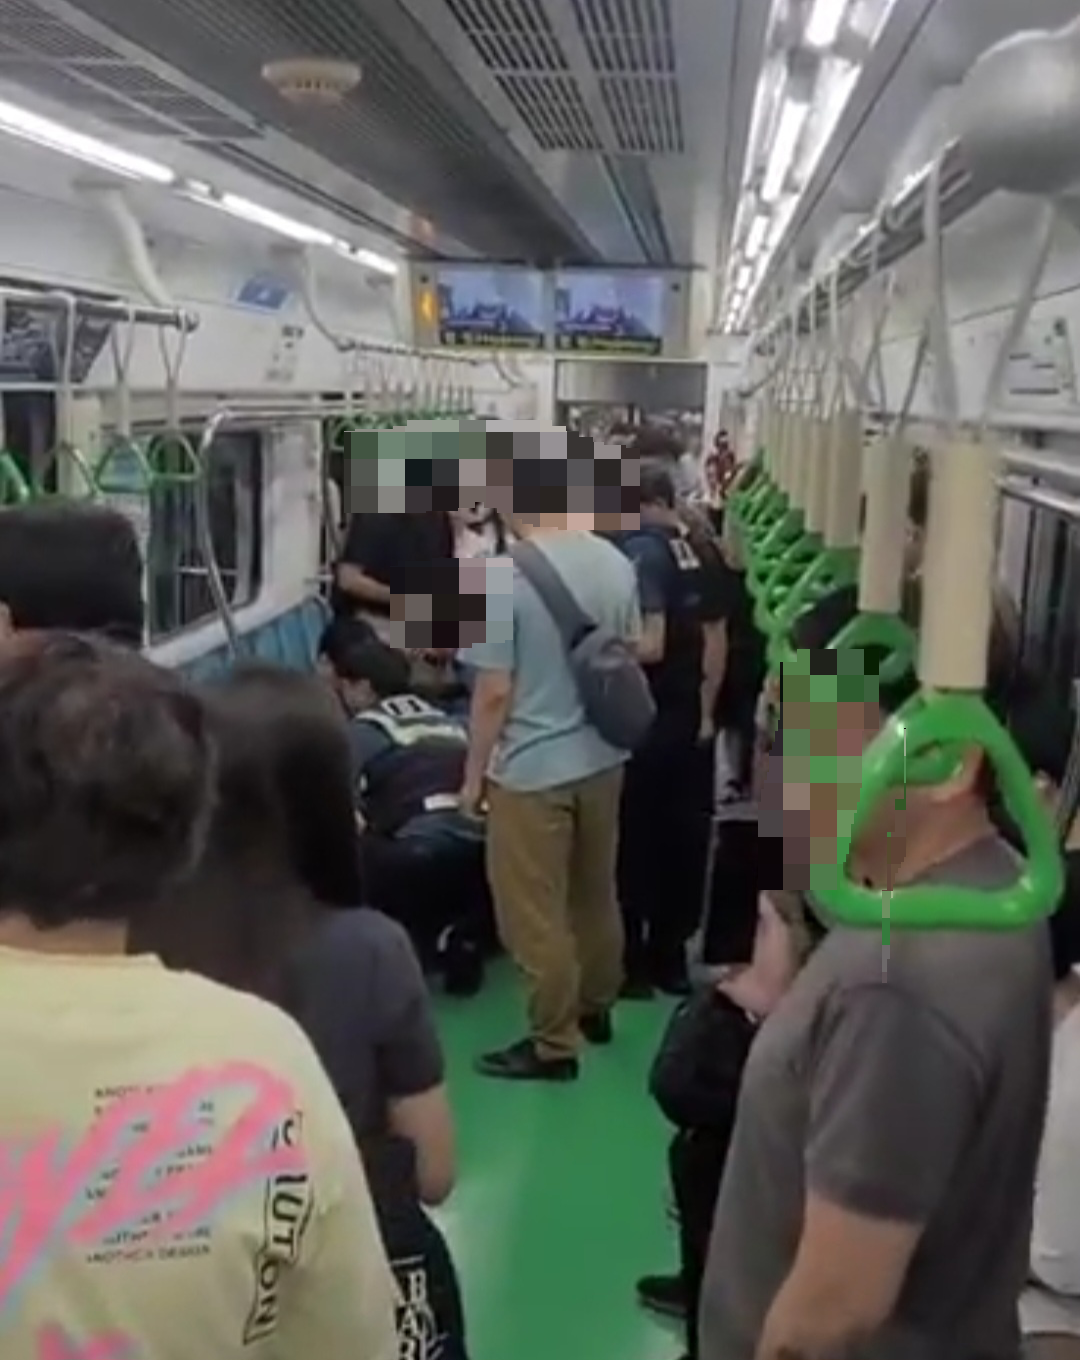 19일 오후 서울 지하철 2호선 열차 안에서 20대 남성 2명에게 흉기를 휘둘러 다치게 한 50대 남성이 경찰에 체포되고 있다.  인터넷 화면 캡처